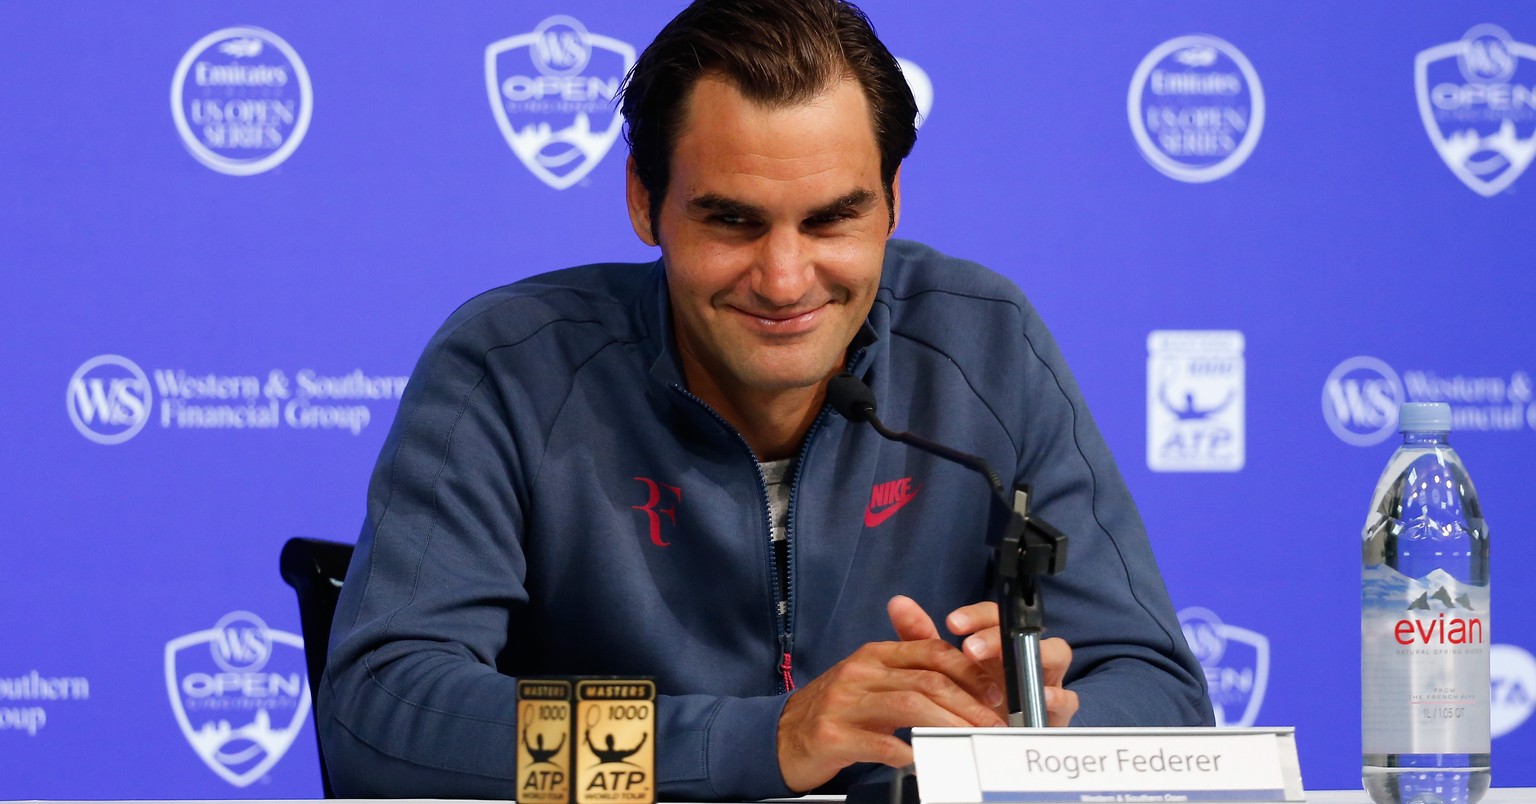 Roger Federer plaudert nach dem Sieg gegen Bautista-Agut aus dem Nähkästchen.